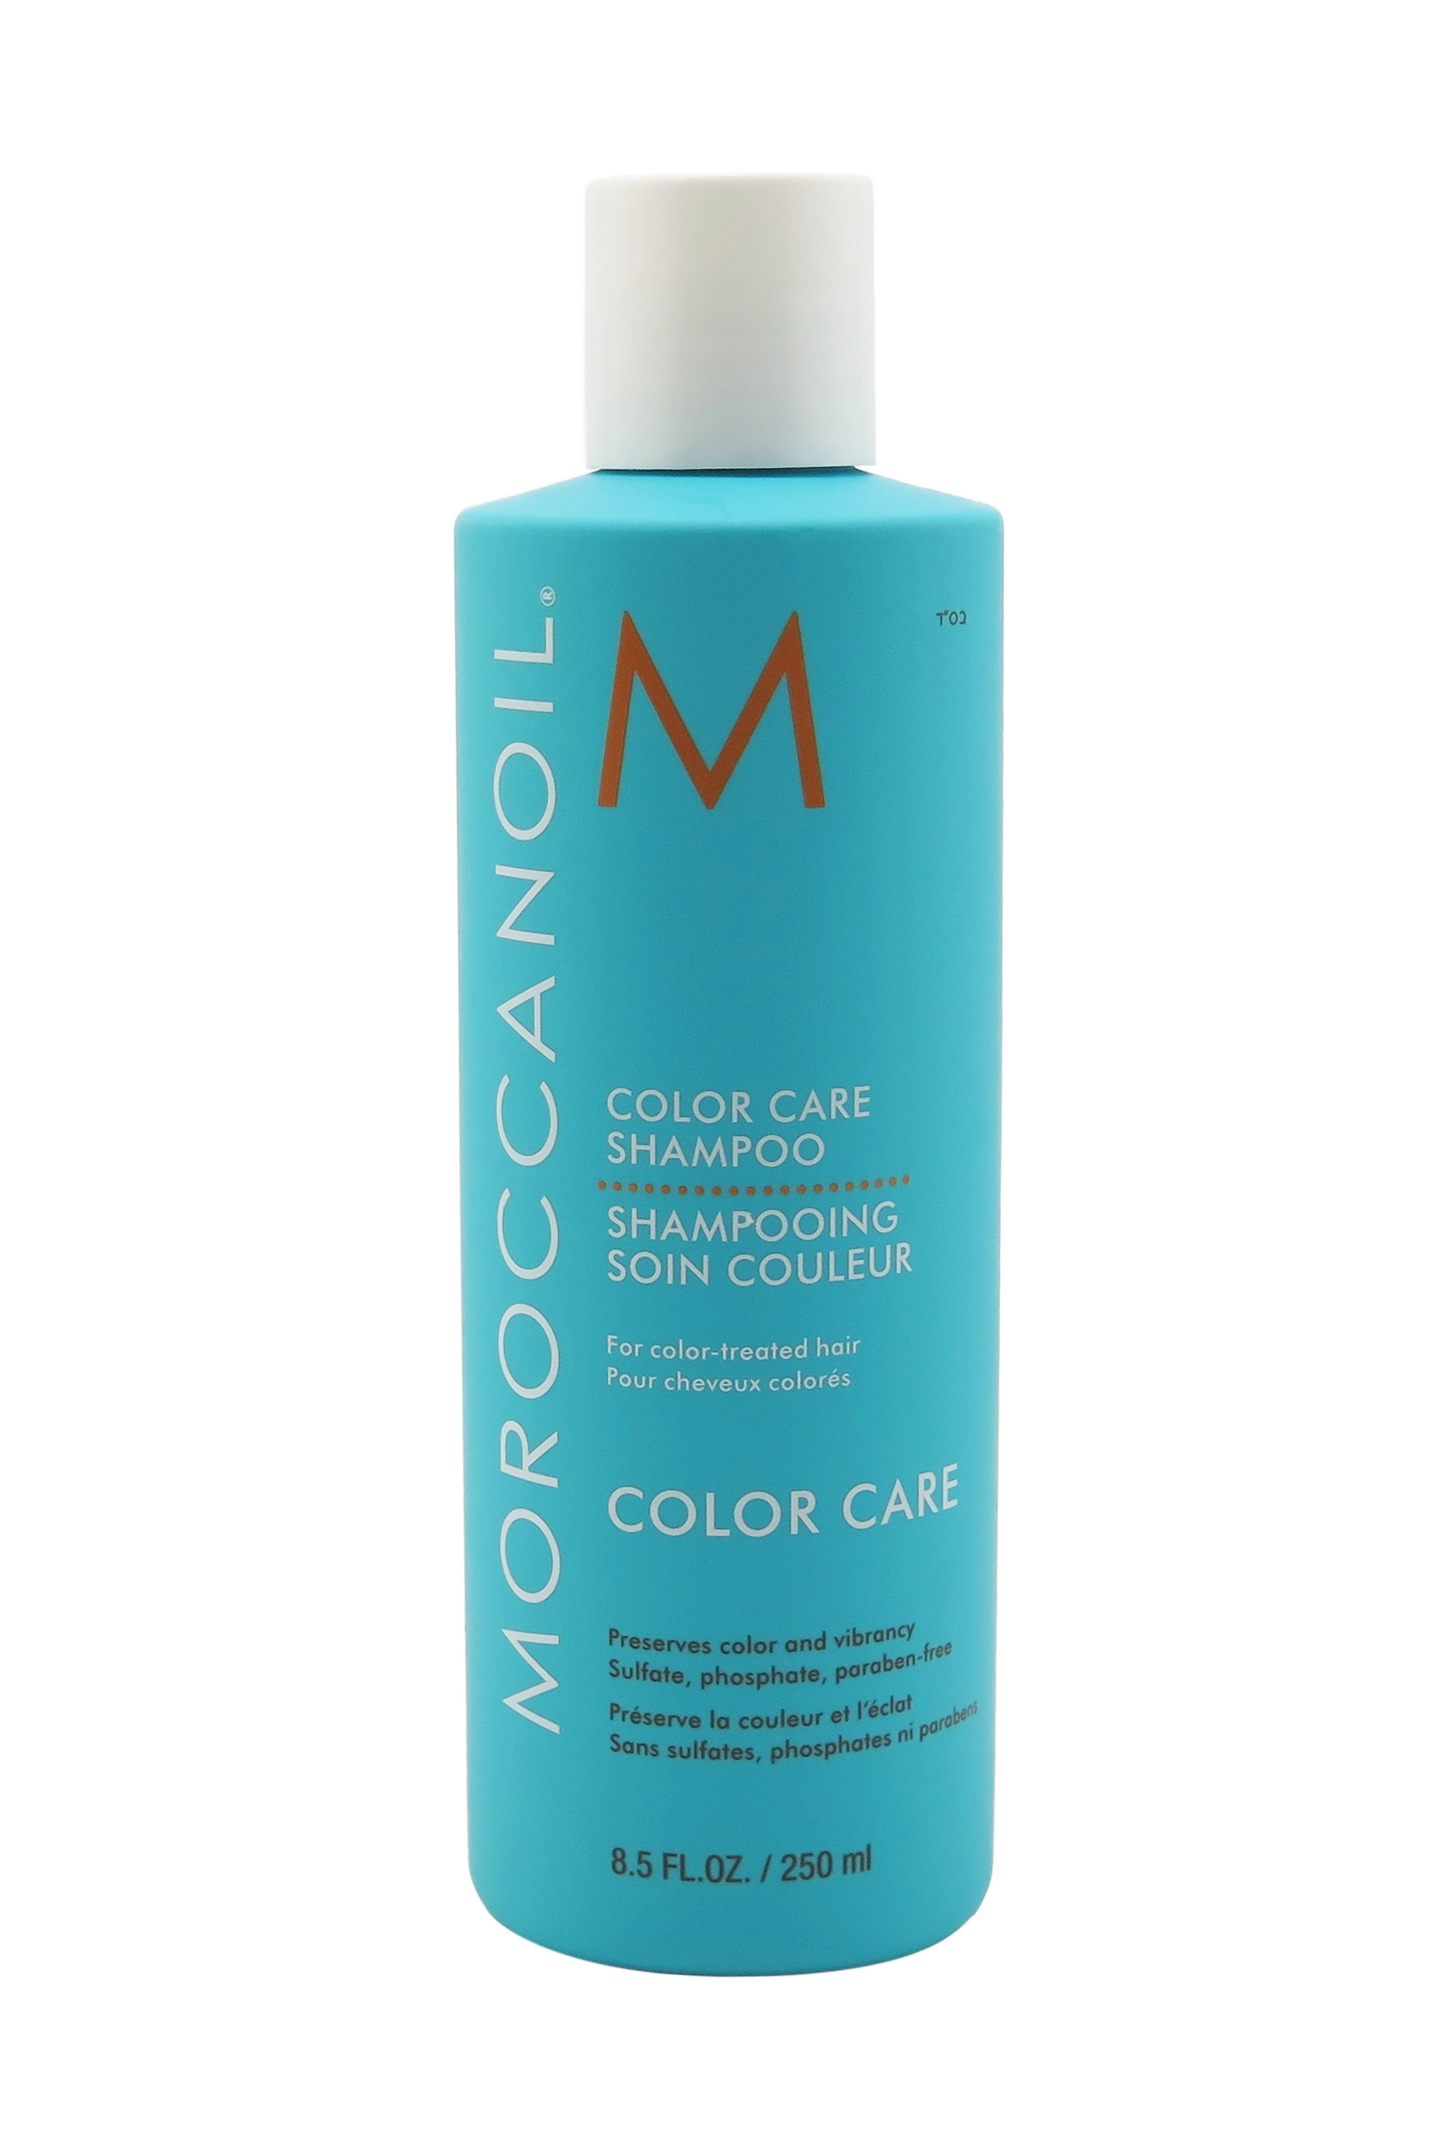 Moroccanoil Color Care Shampoo 8.5 fl oz